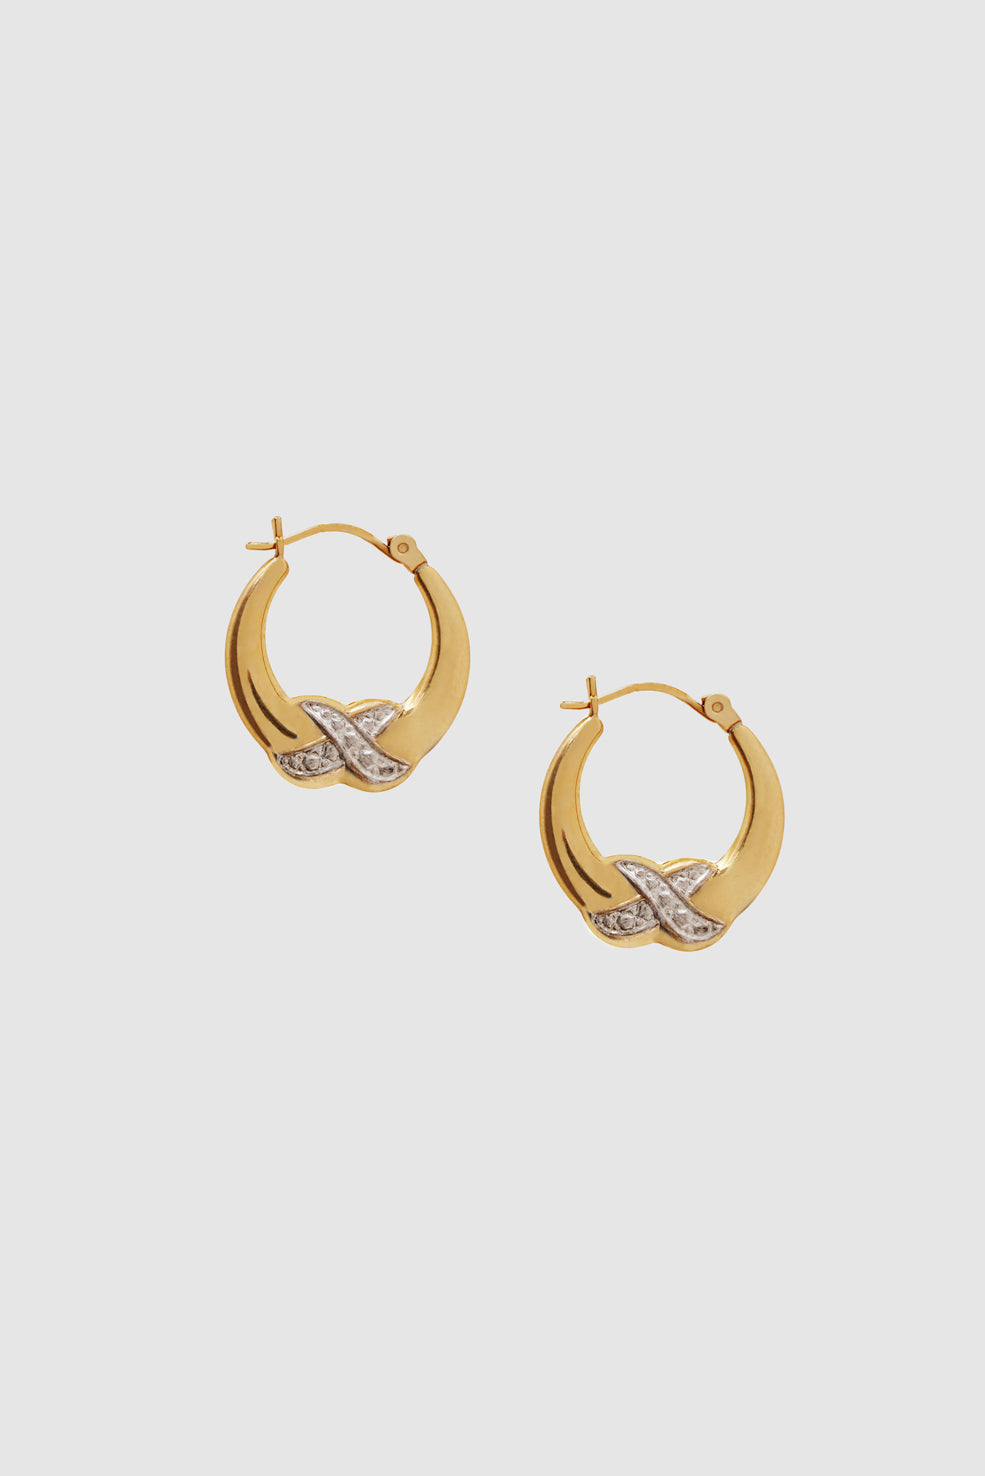 ANINE BING Diamond Cross Hoop Earrings - 14k Gold - Second Front View